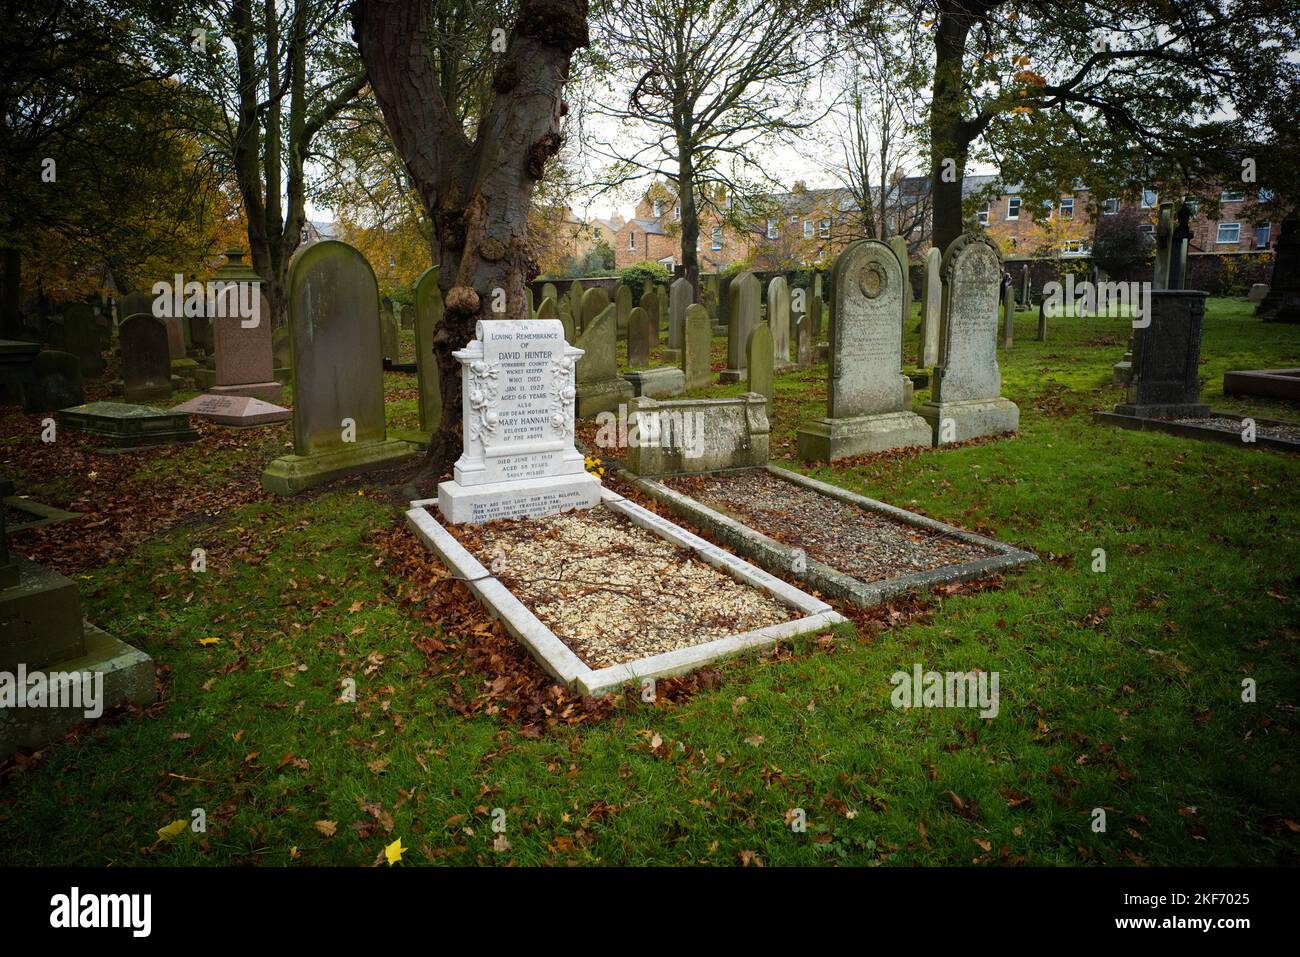 Grabstein auf dem Friedhof von Manor Road in Scarborough von David Hunter, dem Wicket-Wächter des Yorkshire County, der 1927 im Alter von 66 Jahren starb Stockfoto